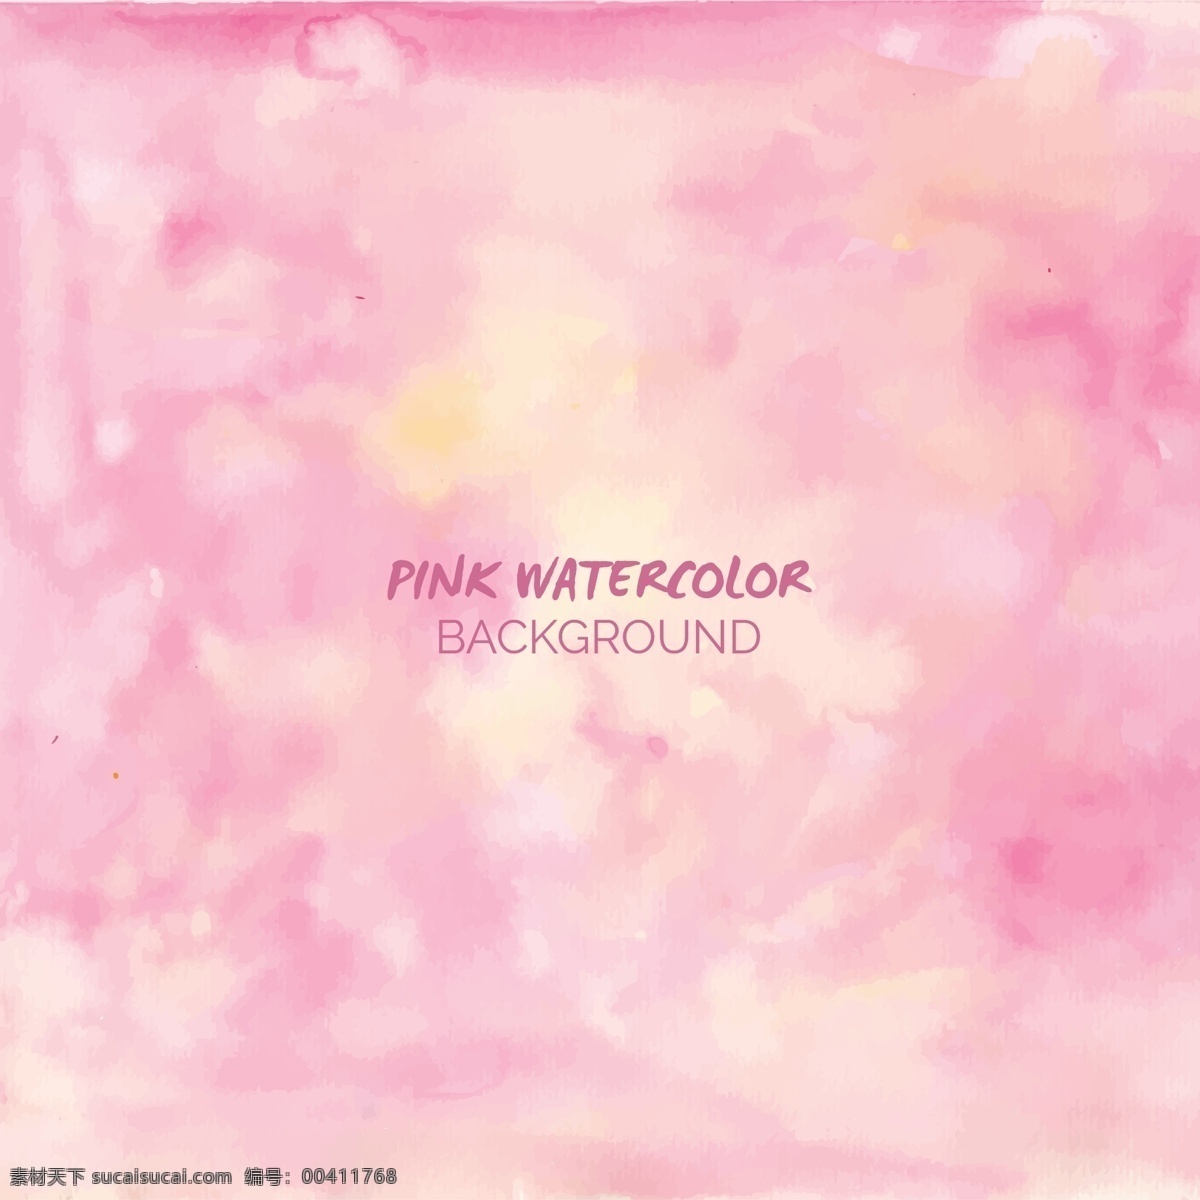 浅 粉色 水彩 背景 抽象的水彩画 一方面 飞溅 油漆 粉红色的 艺术的 粉红的底色 油漆飞溅 污点 污渍 美观 光滑 手画 画 染色